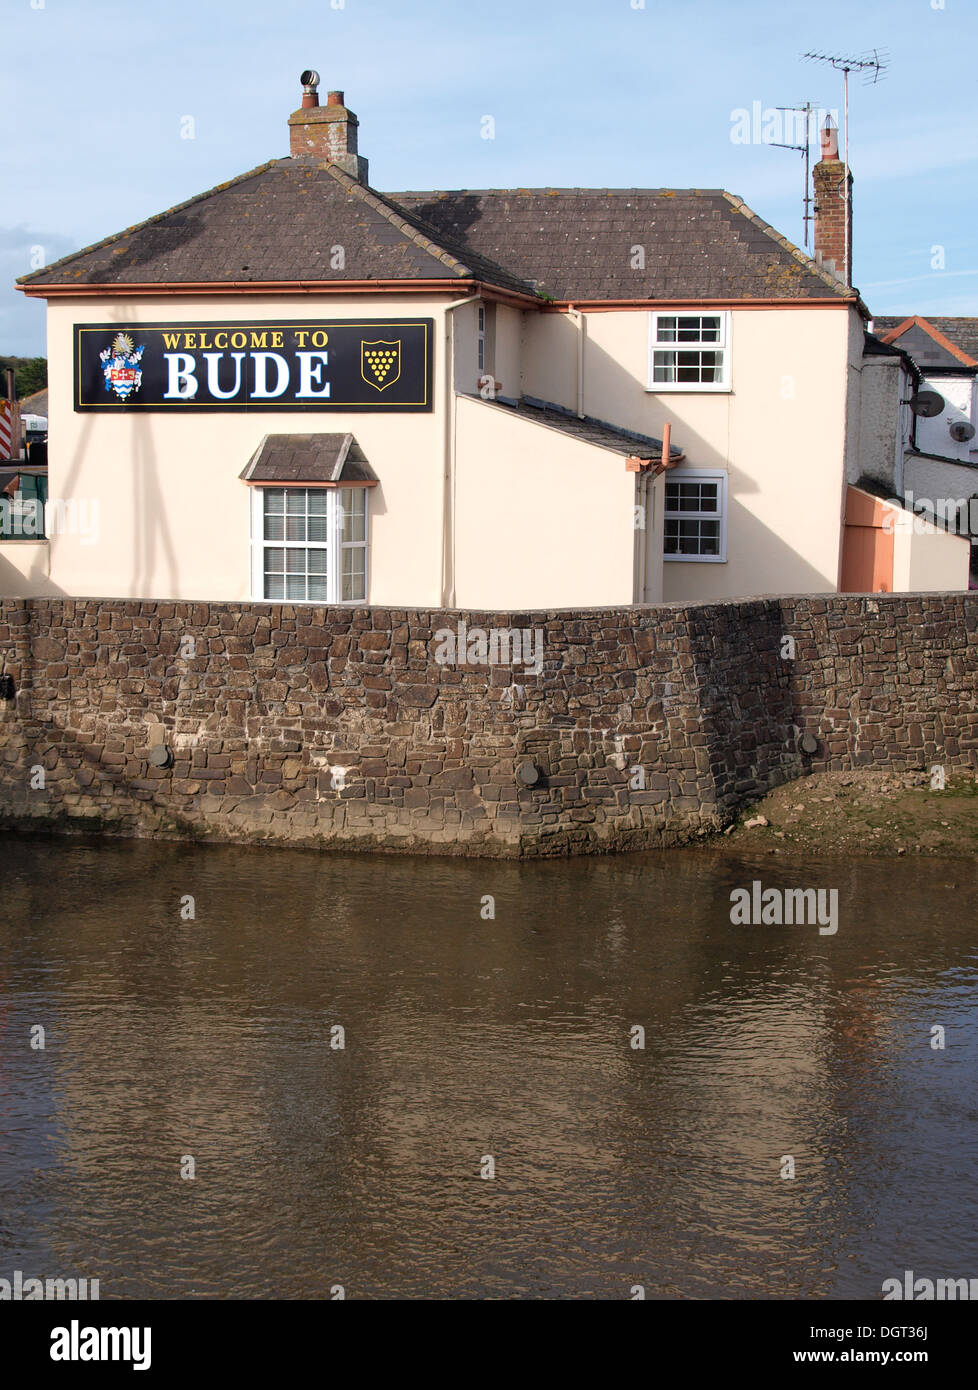 Bienvenido a Bude cartel en una casa en las afueras de la ciudad junto al río, Neet Bude, Cornualles, en el REINO UNIDO Foto de stock